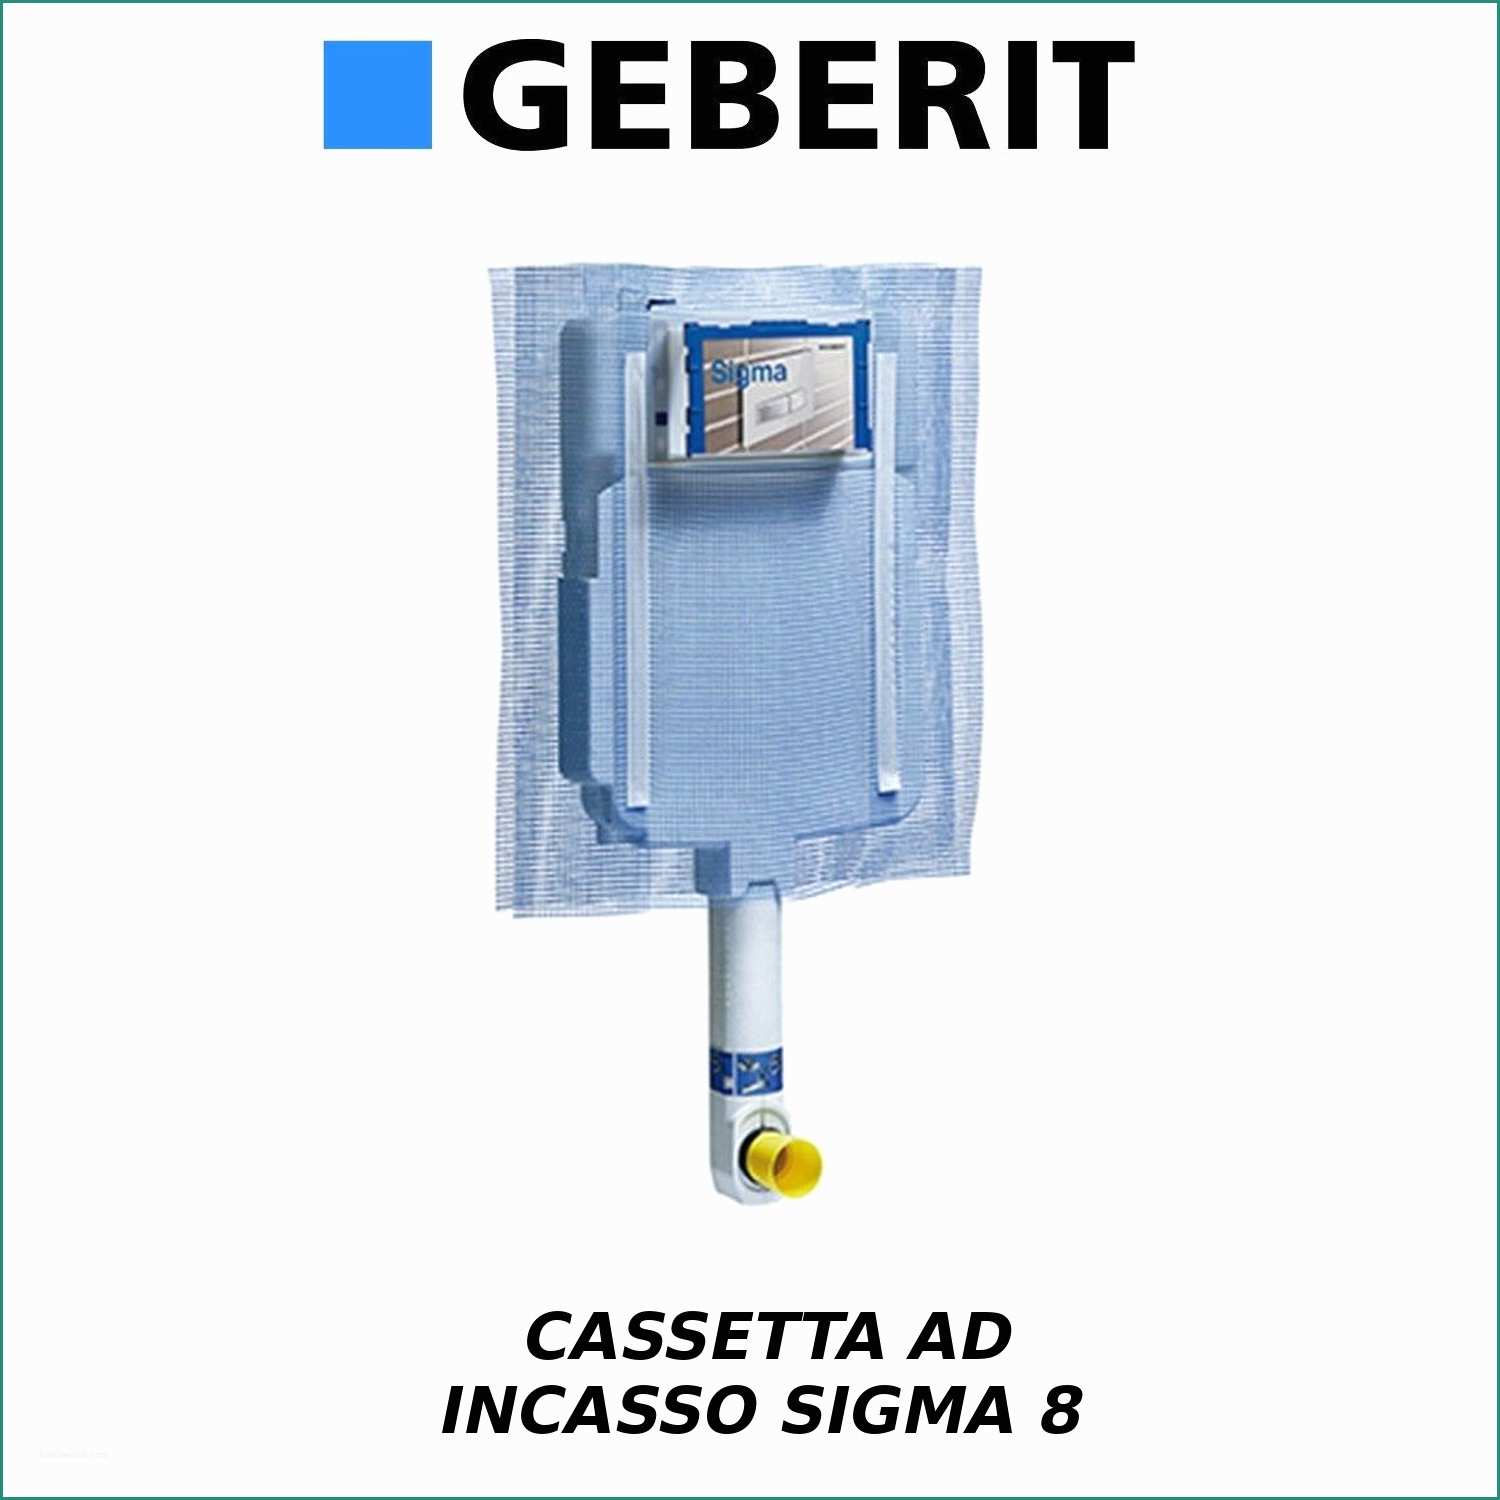 Cassetta Geberit Perde Acqua E Cassetta Wc Incasso Geberit Sigma8 Bri An Con Accessori E Ricambi